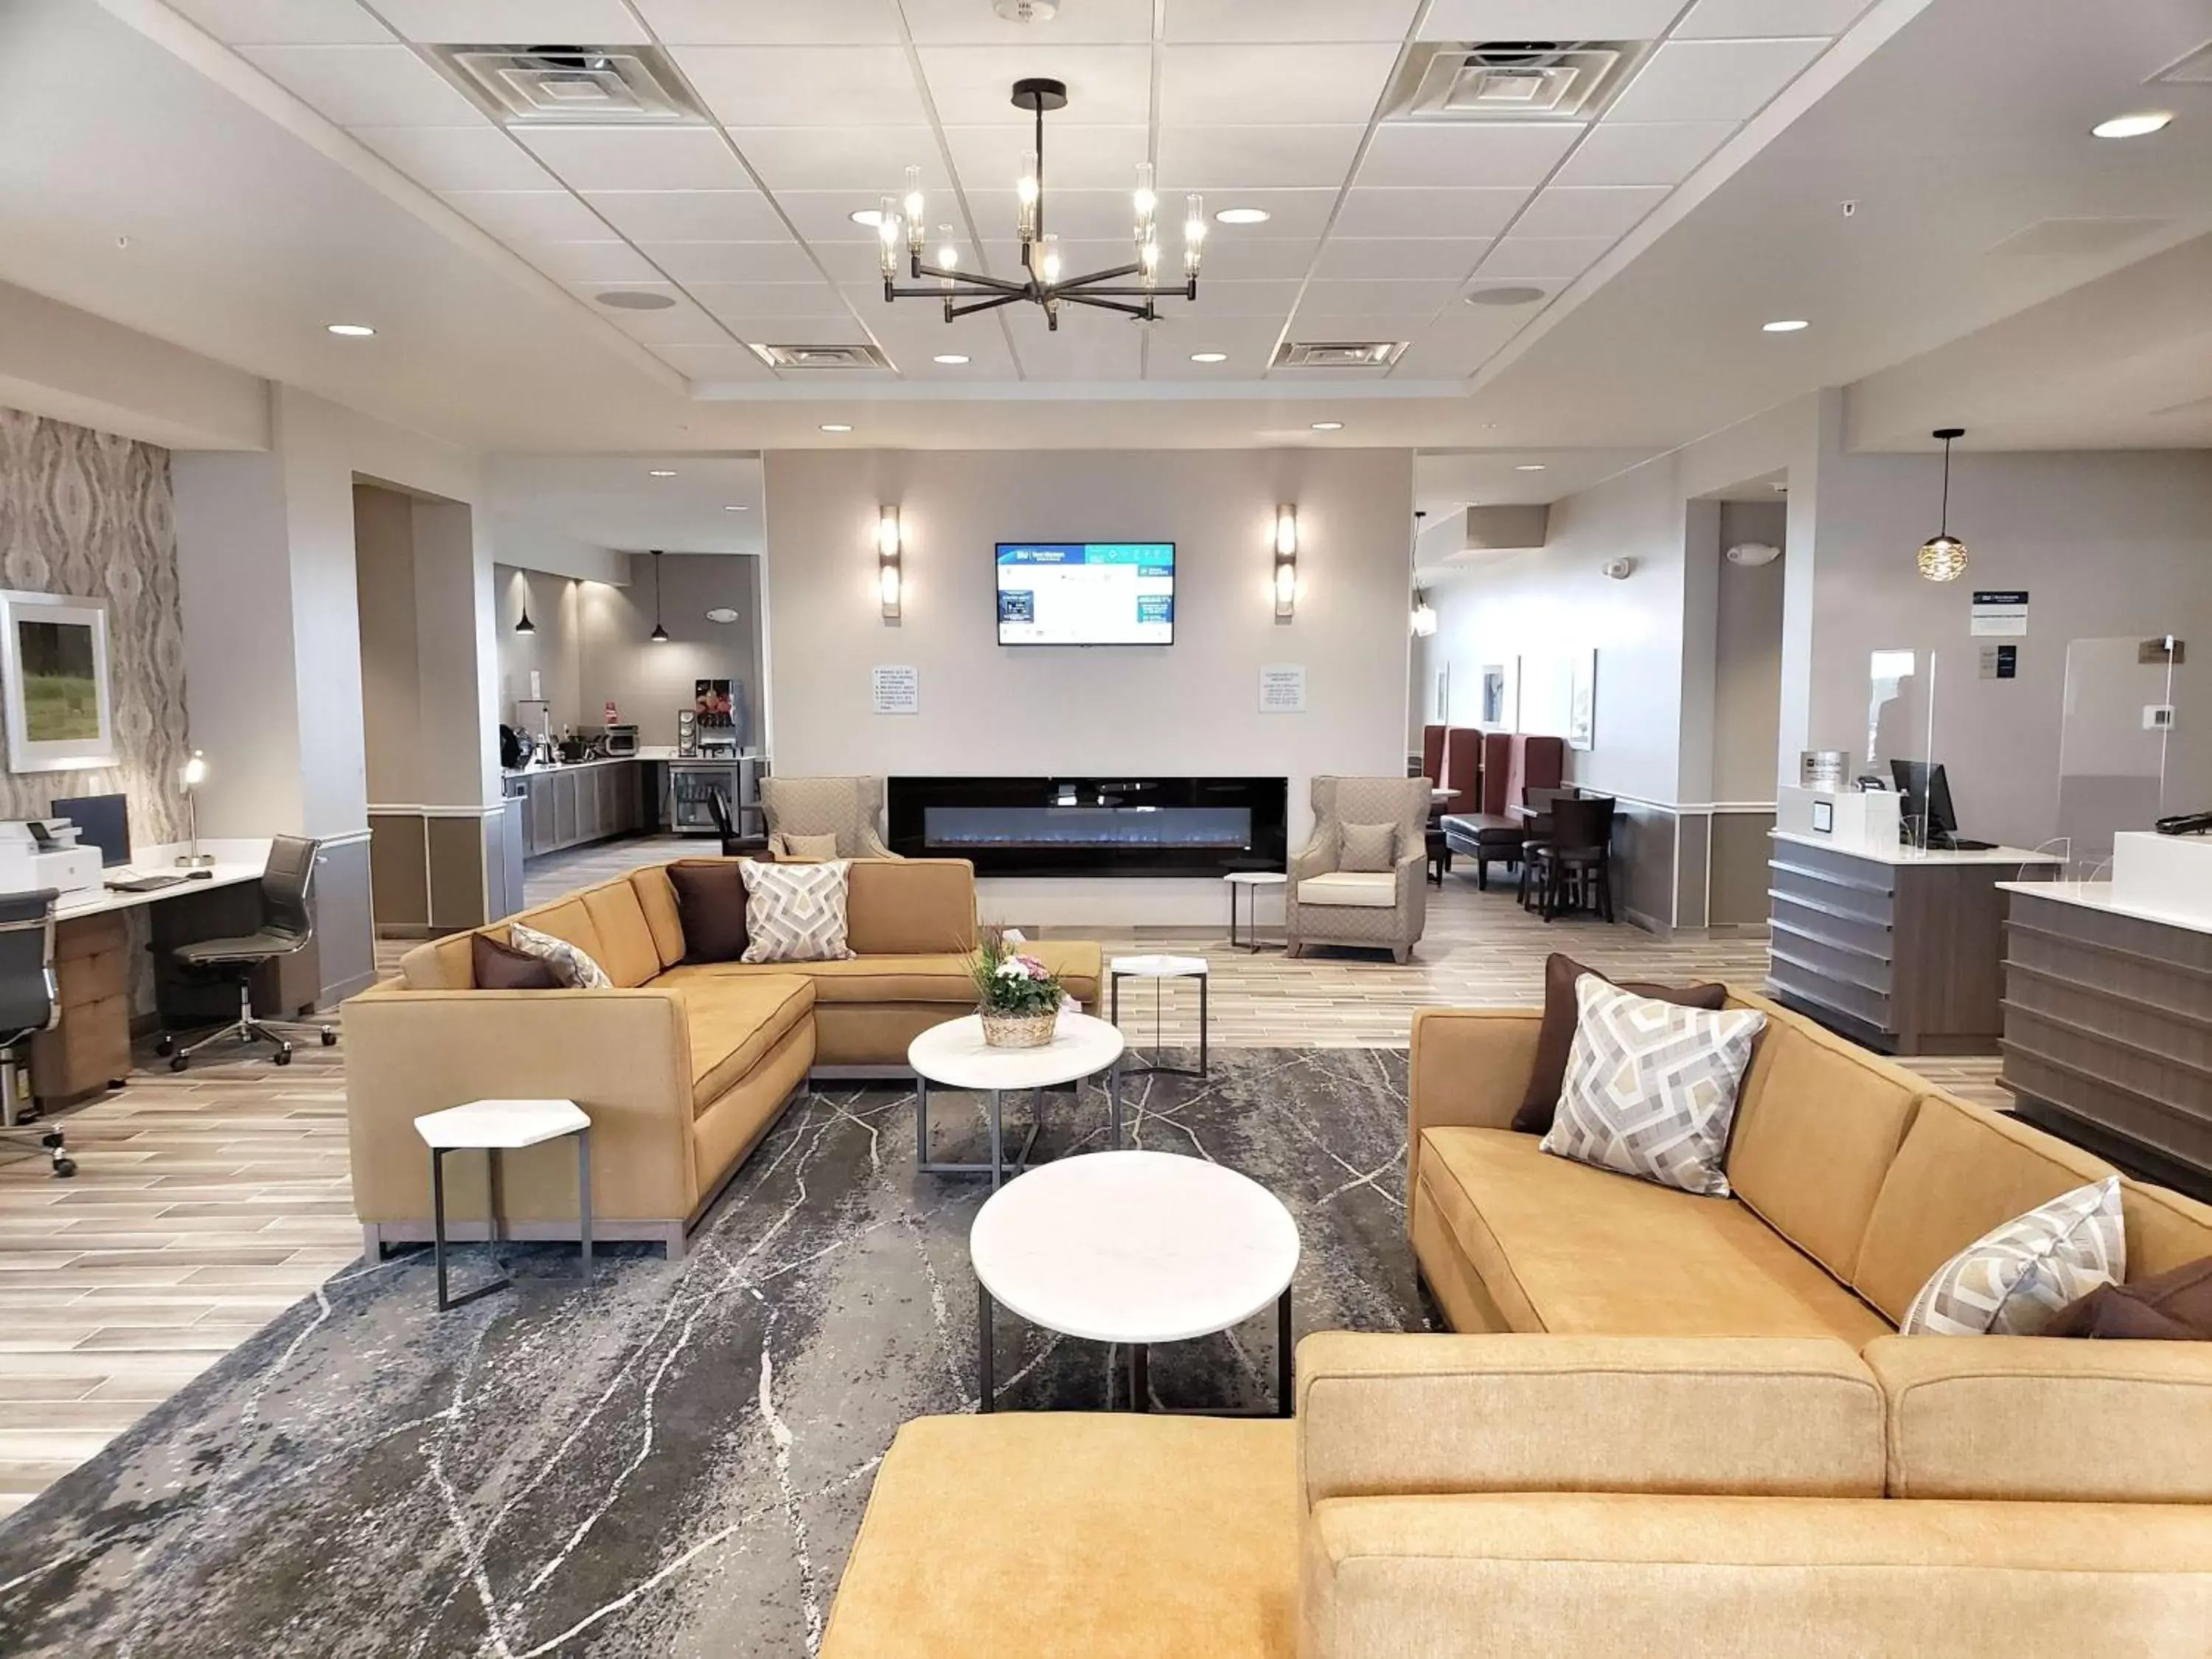 Lobby or reception, Lounge/Bar in Best Western Plus Jefferson